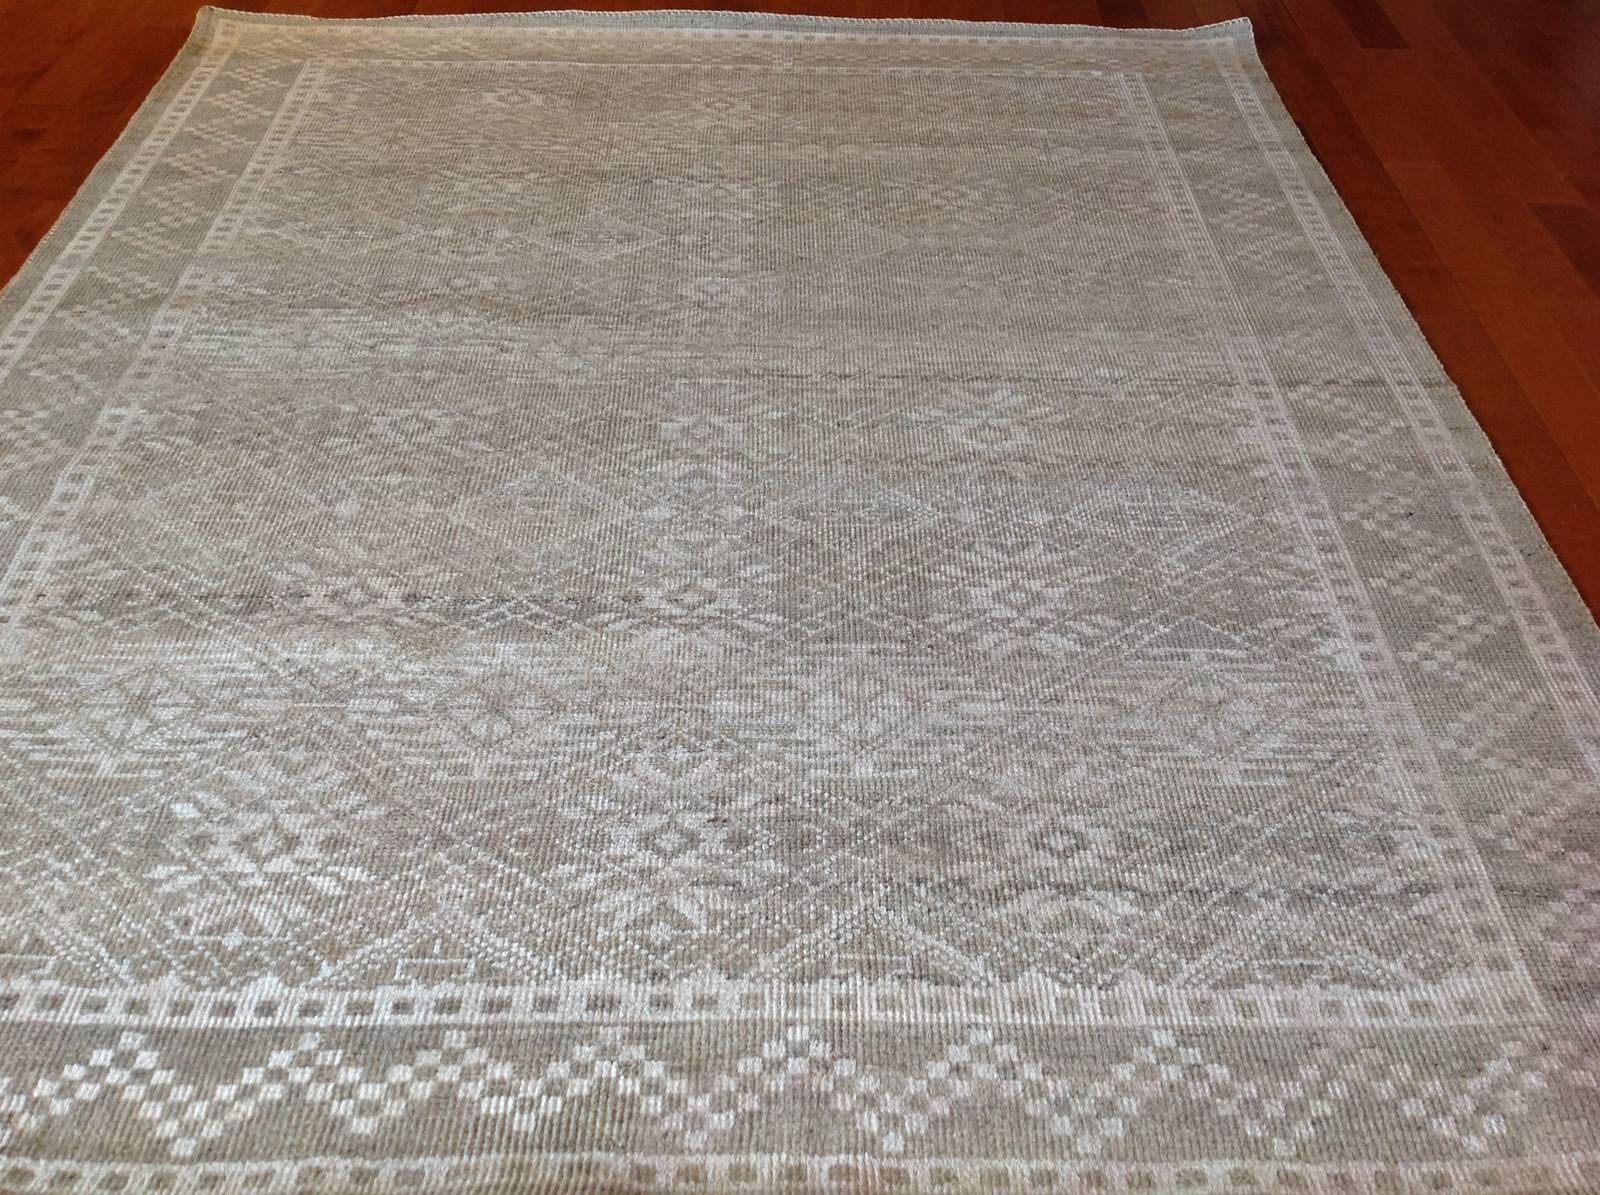 Transitional design rug.